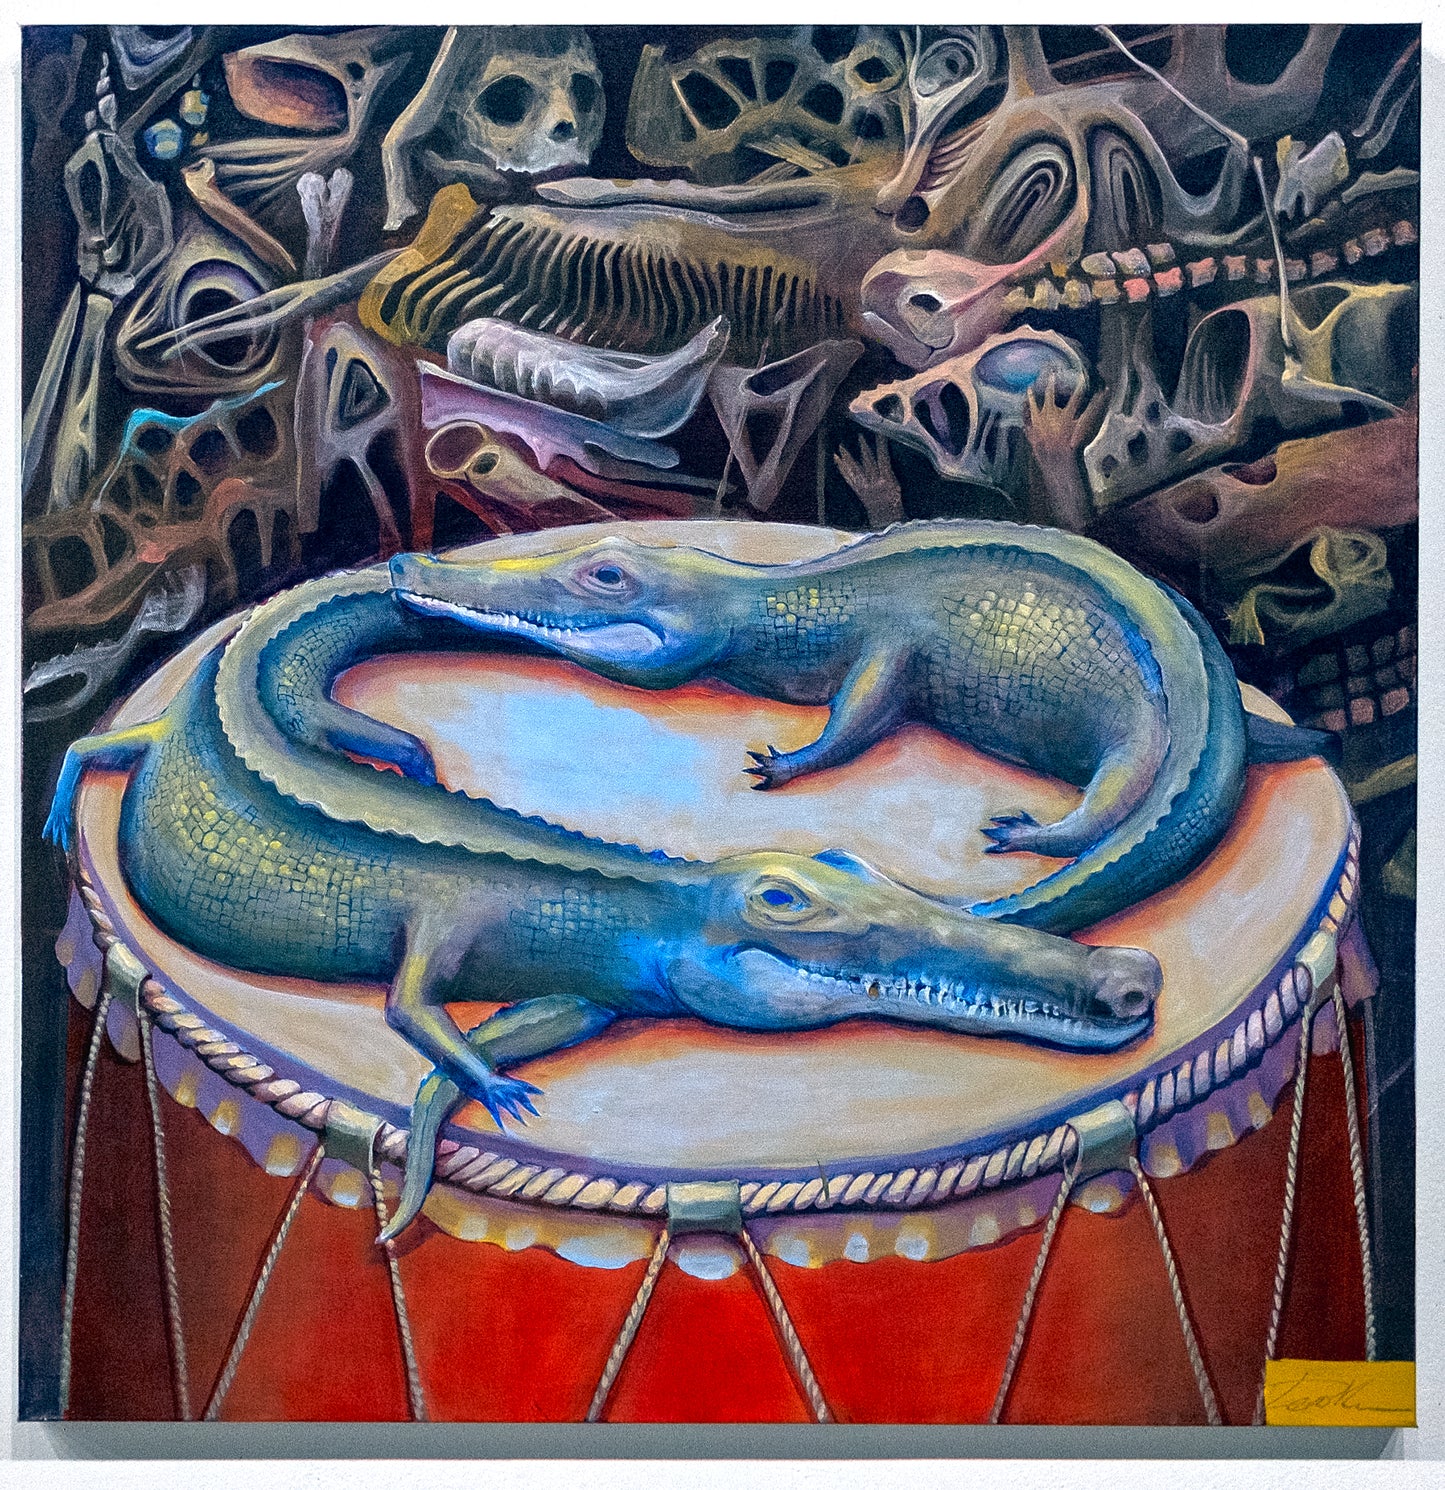 Mayhem Drum by Denis Korkh